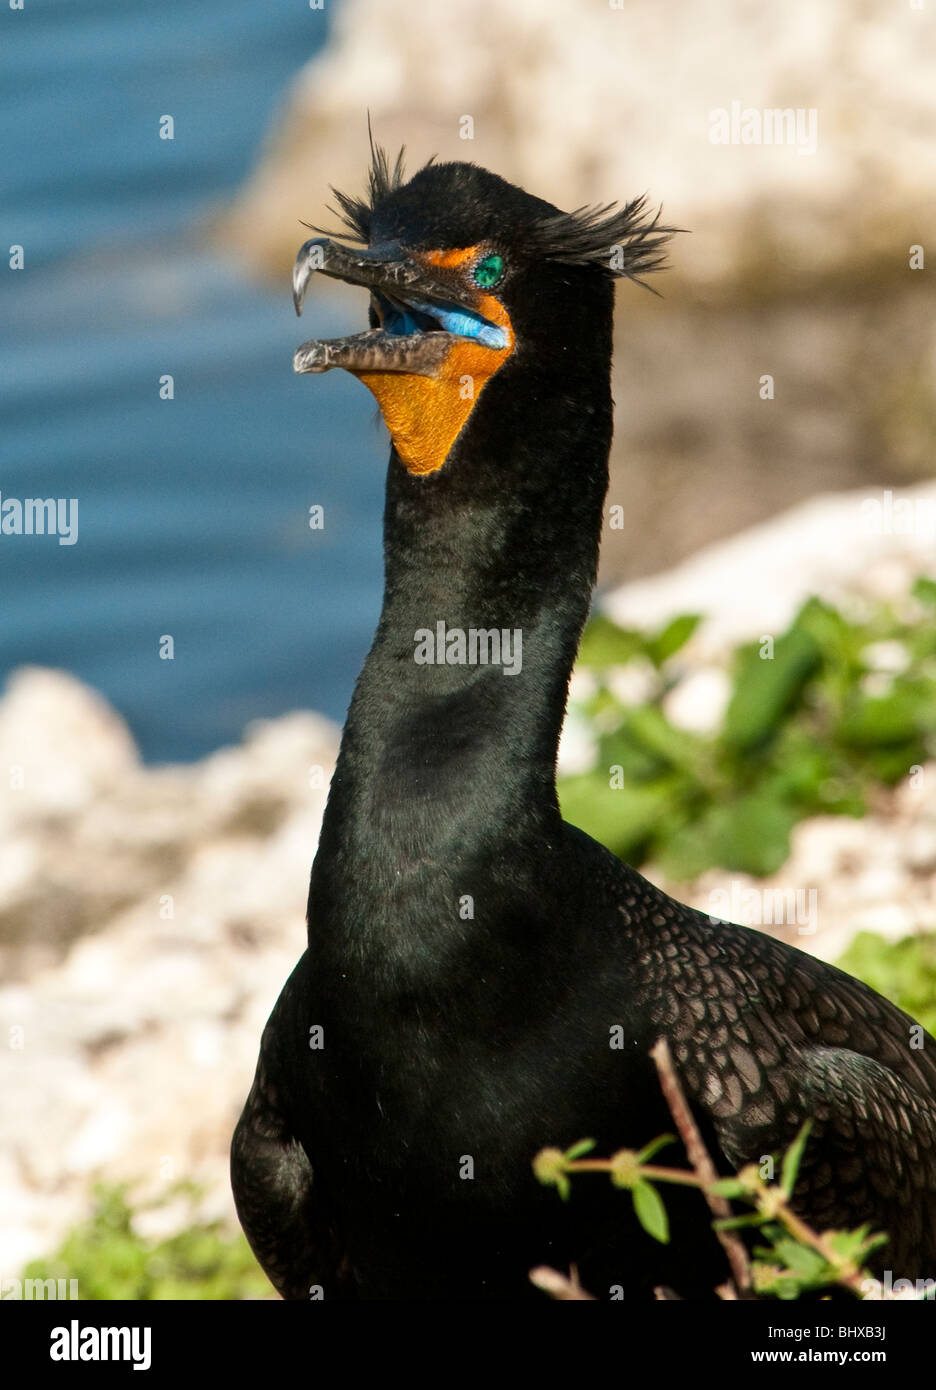 Doble retrato de cormoranes crested con prominentes crestas visible y abra la boca, grandes aves acuáticas Amiterican Norte Foto de stock